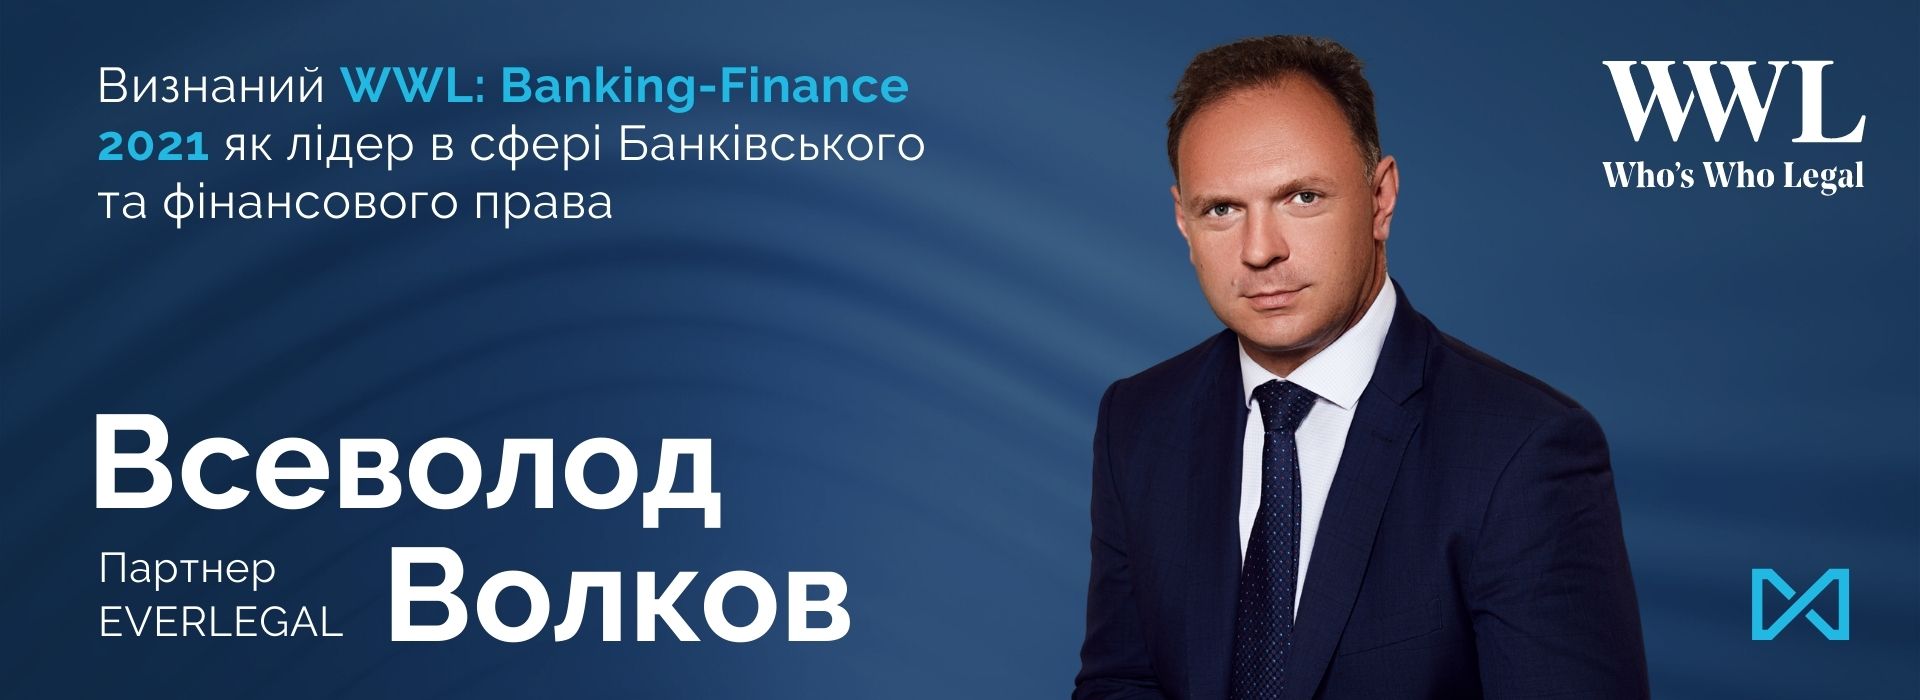 Всеволод Волков визнаний WWL: Banking-Finance як лідер в сфері Банківського та фінансового права